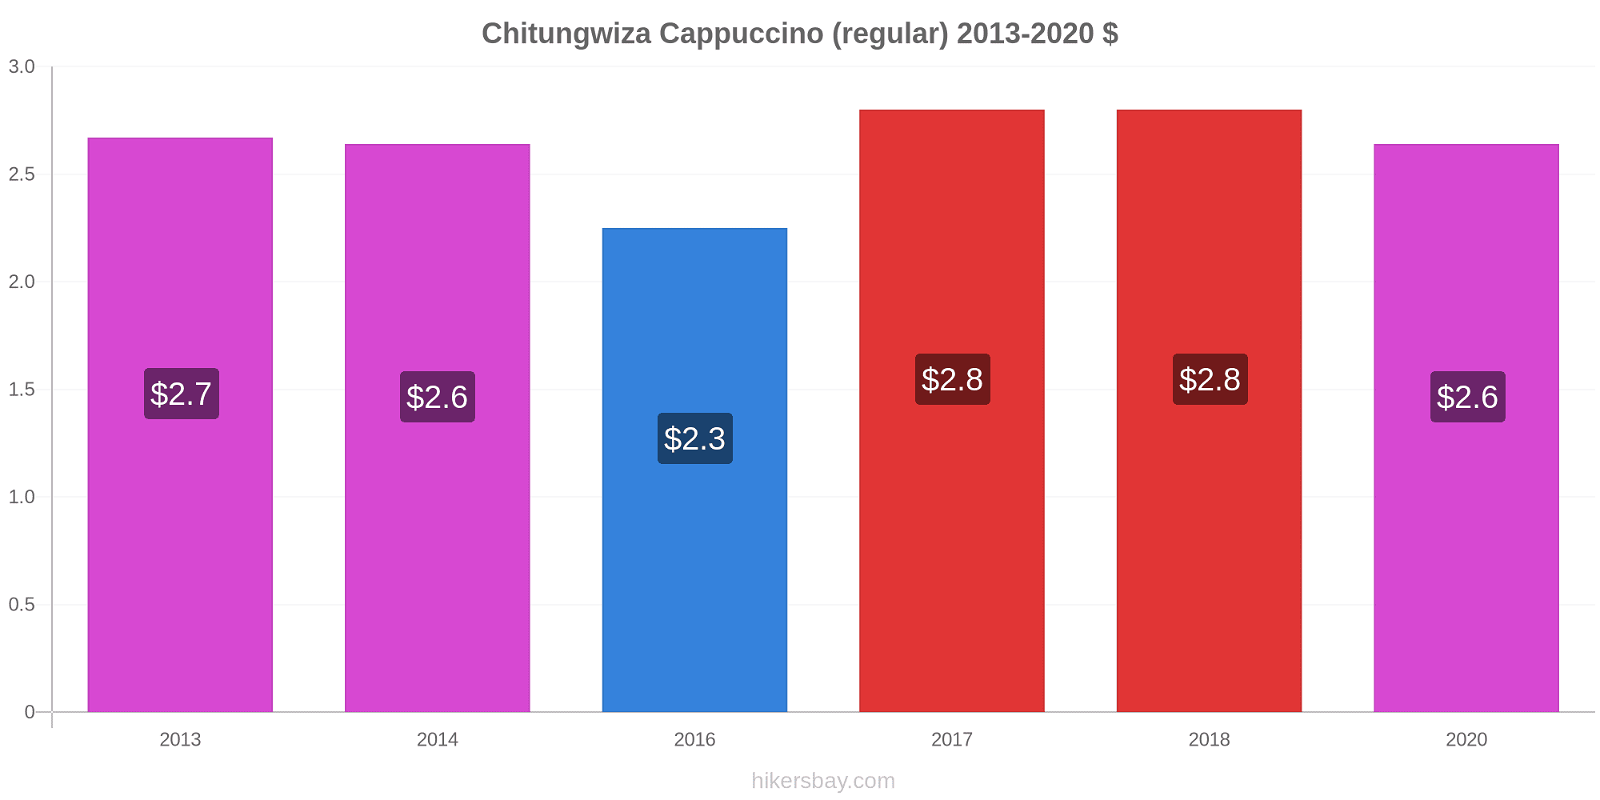 Chitungwiza variação de preço Capuccino (regular) hikersbay.com